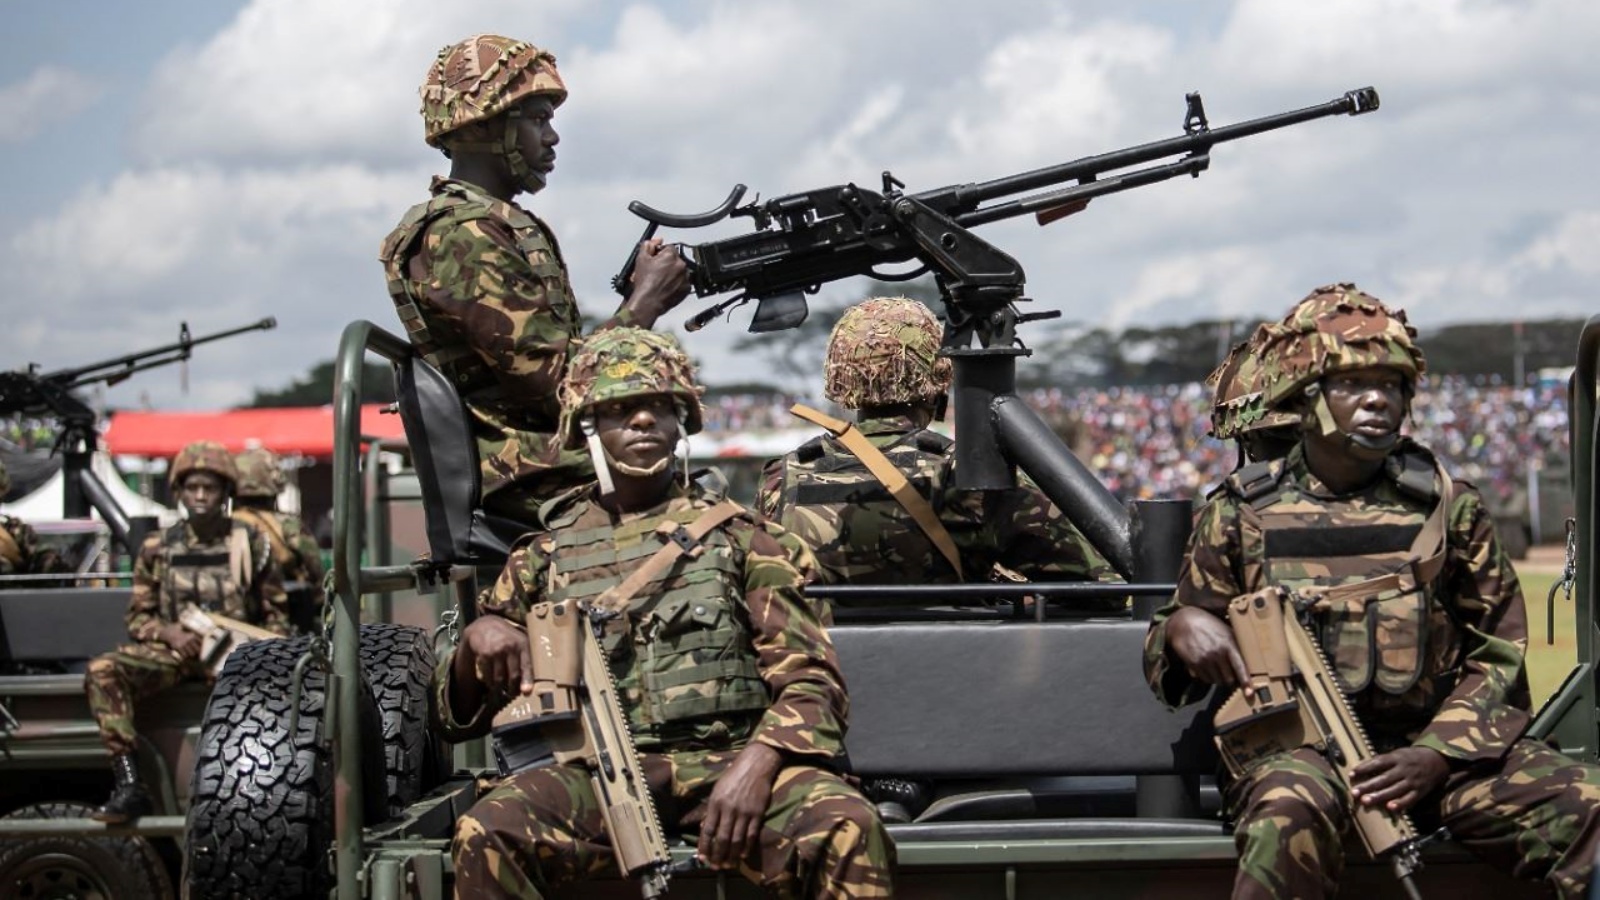 جنود كينيون يشاركون في عرض عسكري في حدائق أوهورو في نيروبي، في اطار الاحتفالات بيوم ماداراكا (الحكم الذاتي) في كينيا، 1 يونيو 2022